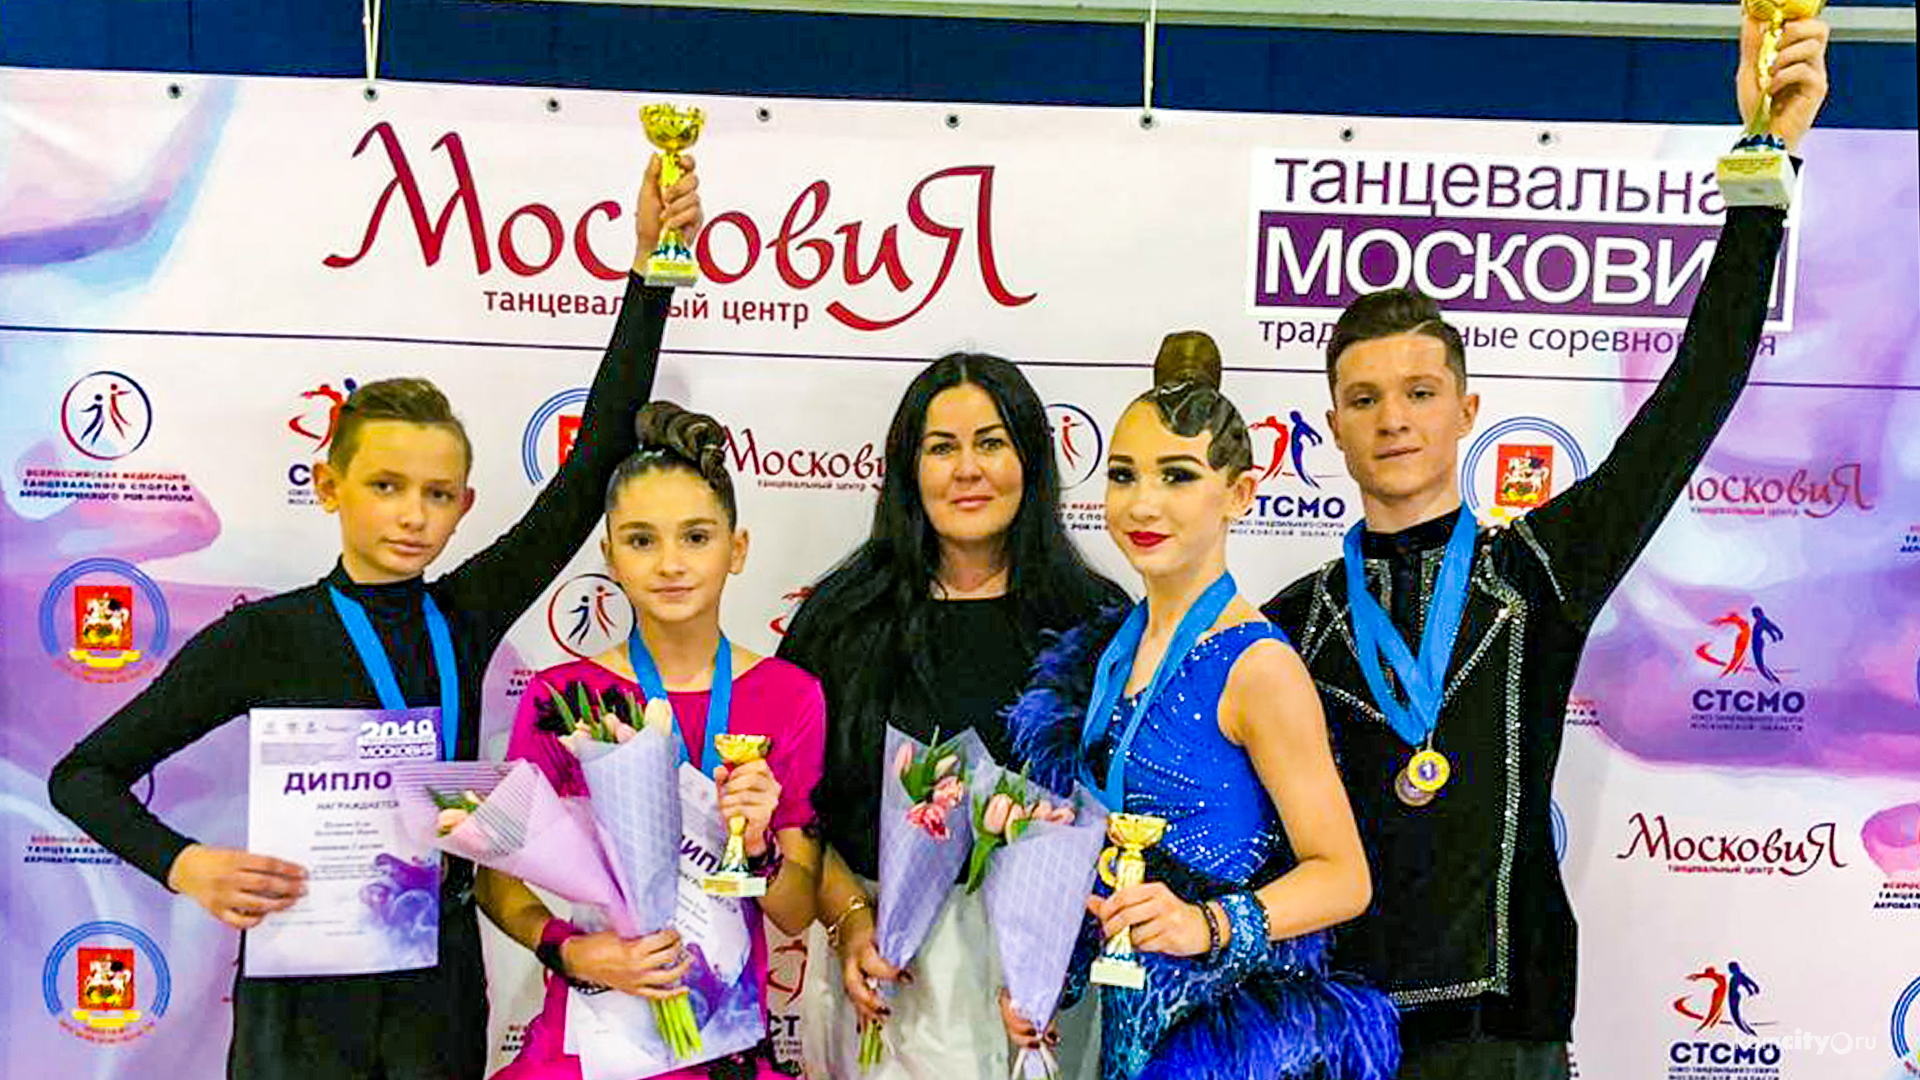 Участники танцевально-спортивного центра «Эдельвейс» Комсомольска-на-Амуре заняли восемь первых мест на конкурсе в Москве